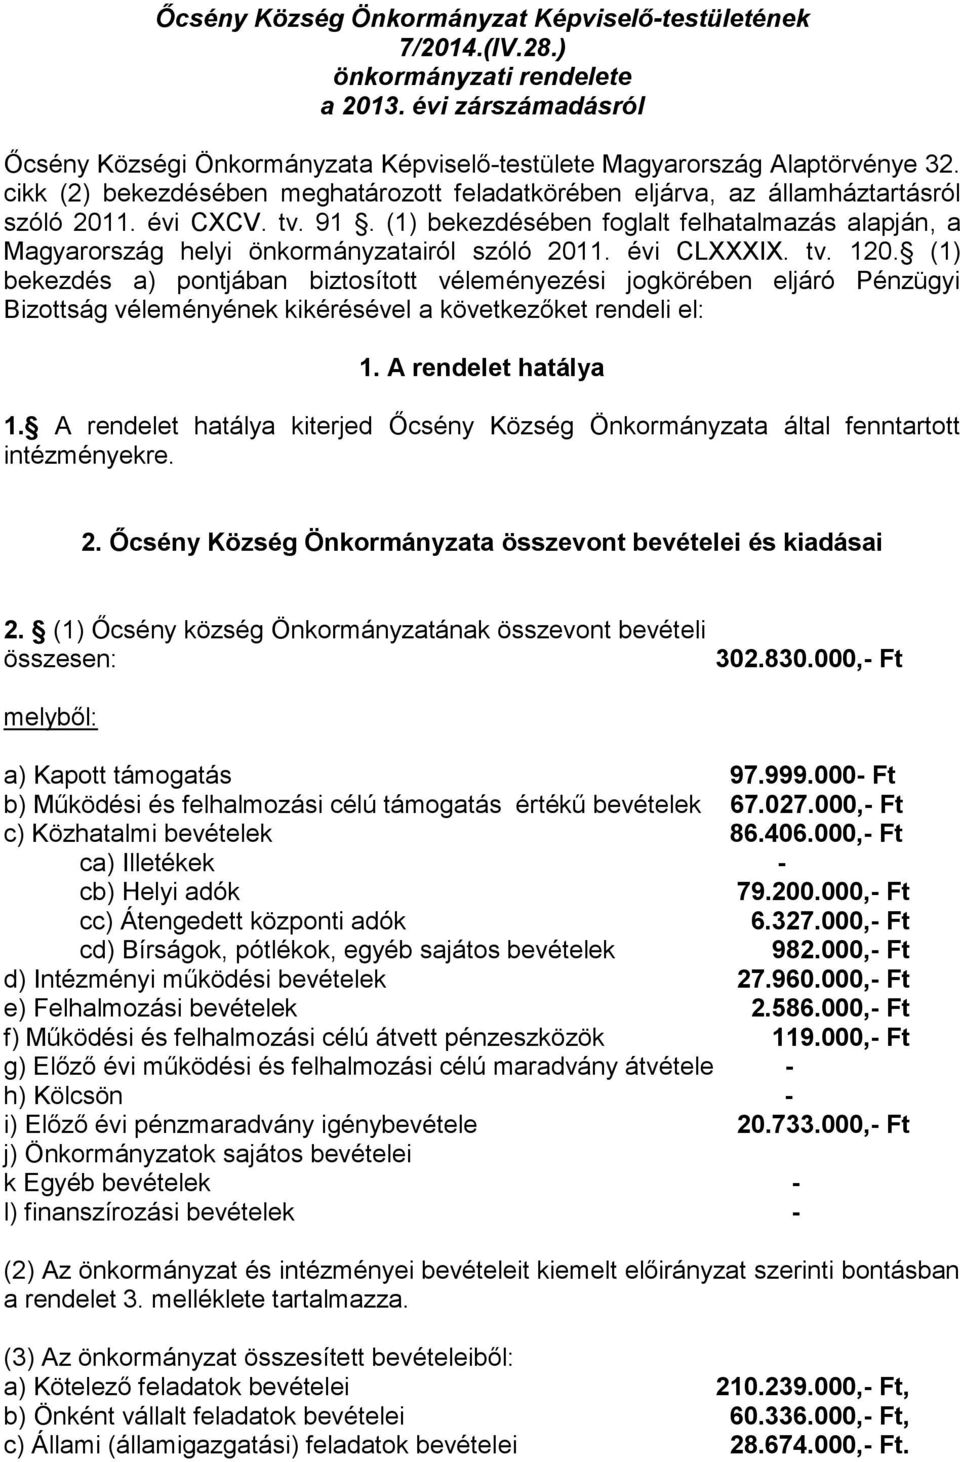 (1) bekezdésében foglalt felhatalmazás alapján, a Magyarország helyi önkormányzatairól szóló 2011. évi CLXXXIX. tv. 120.